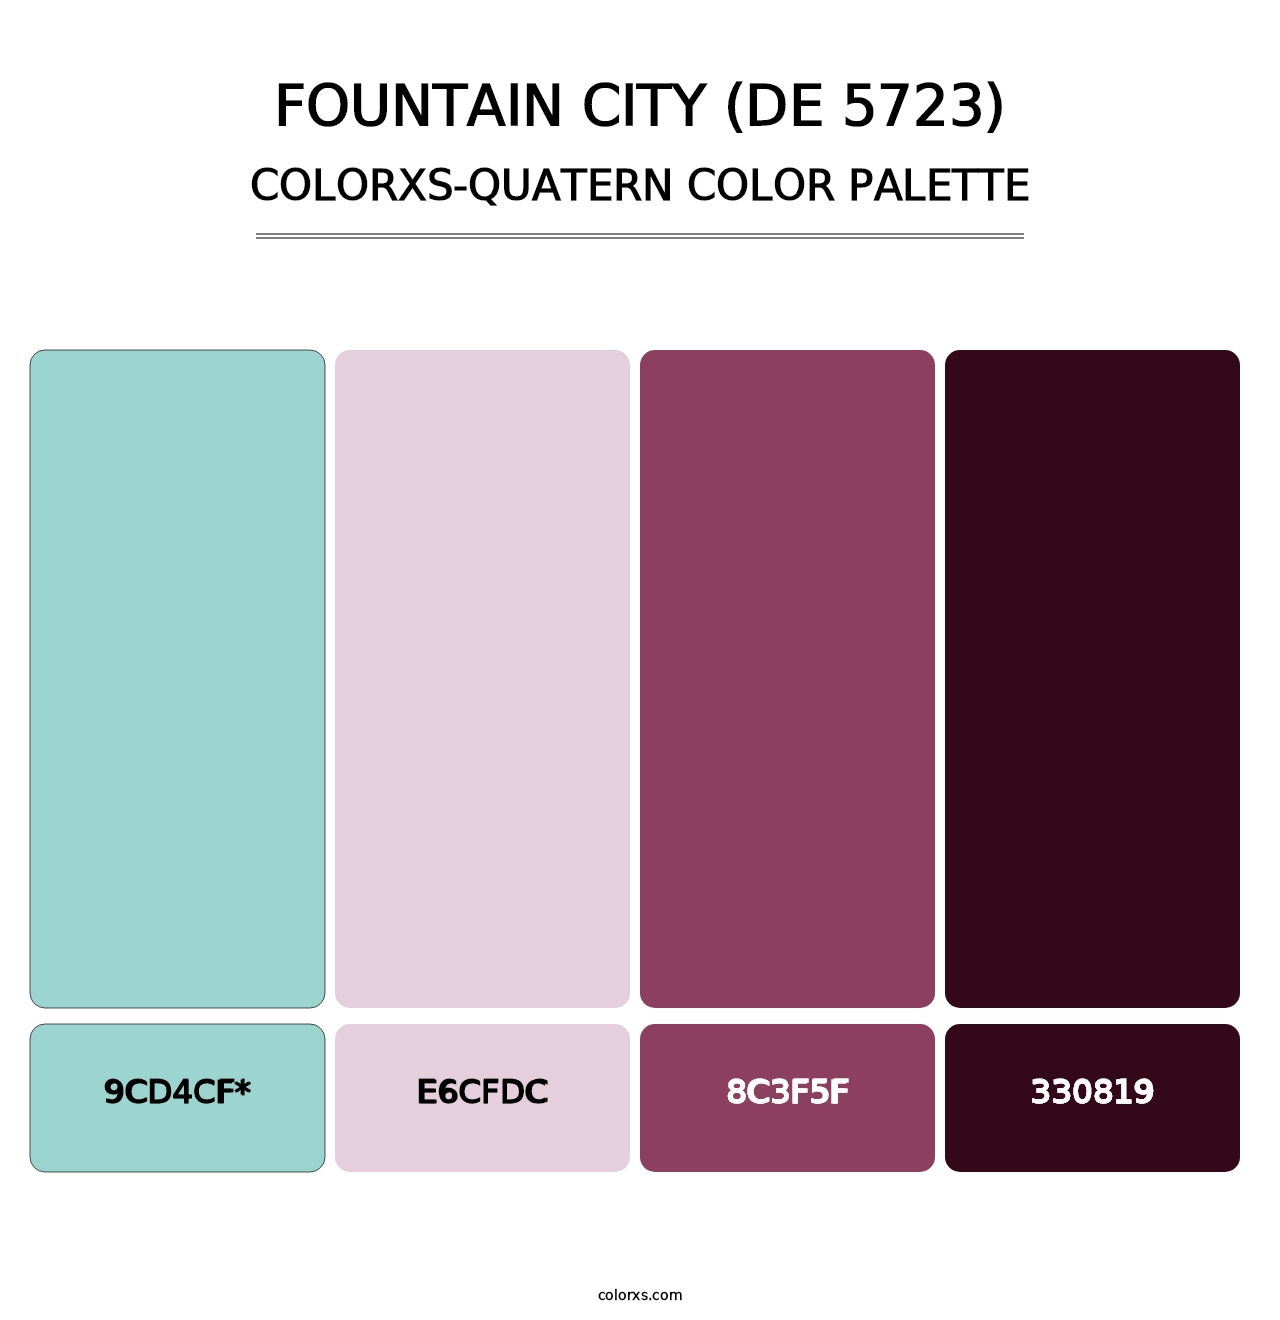 Fountain City (DE 5723) - Colorxs Quatern Palette